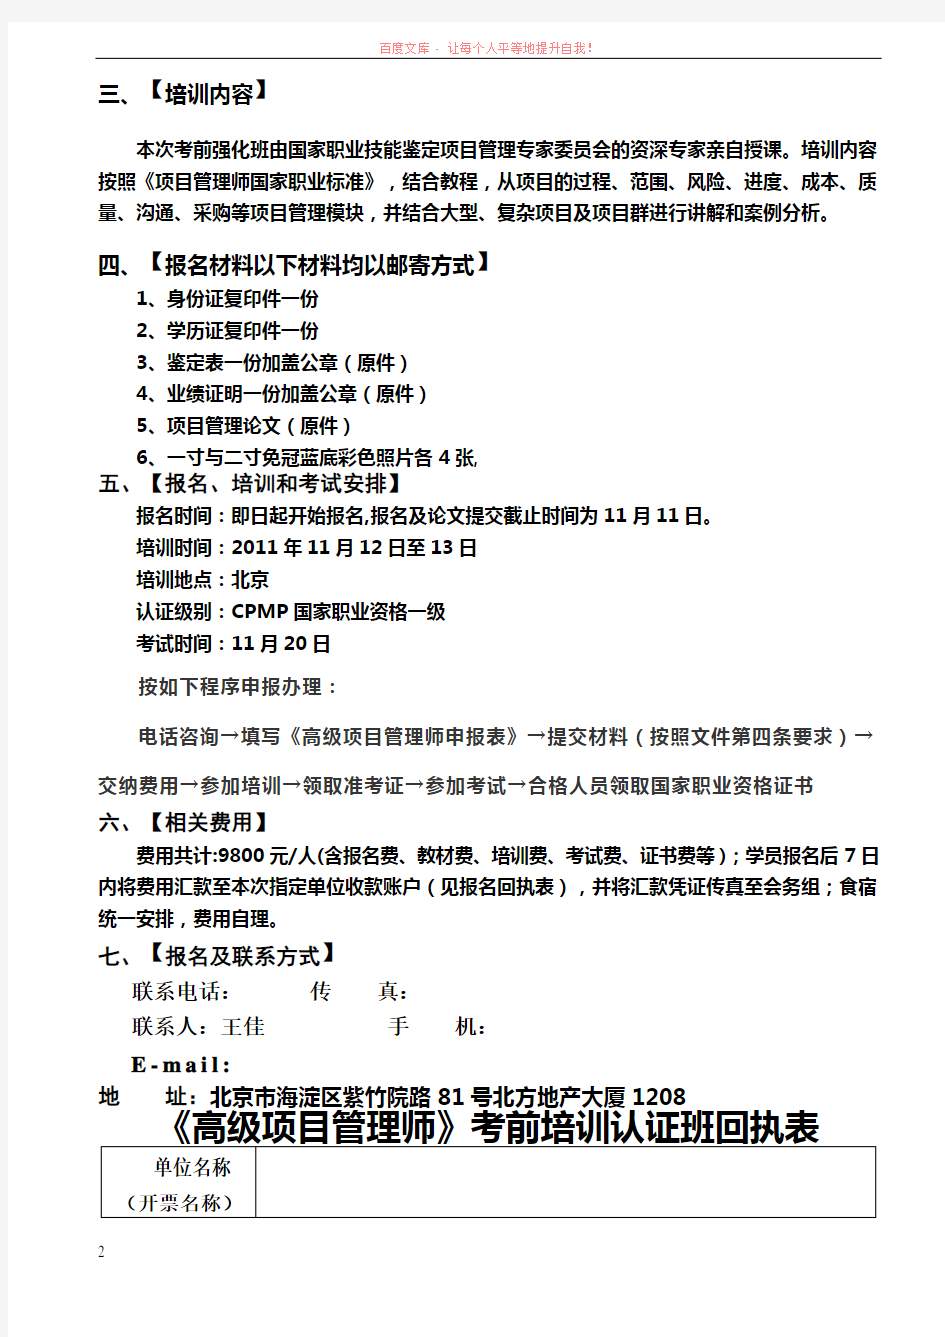 王佳高级项目管理师文件 (1)